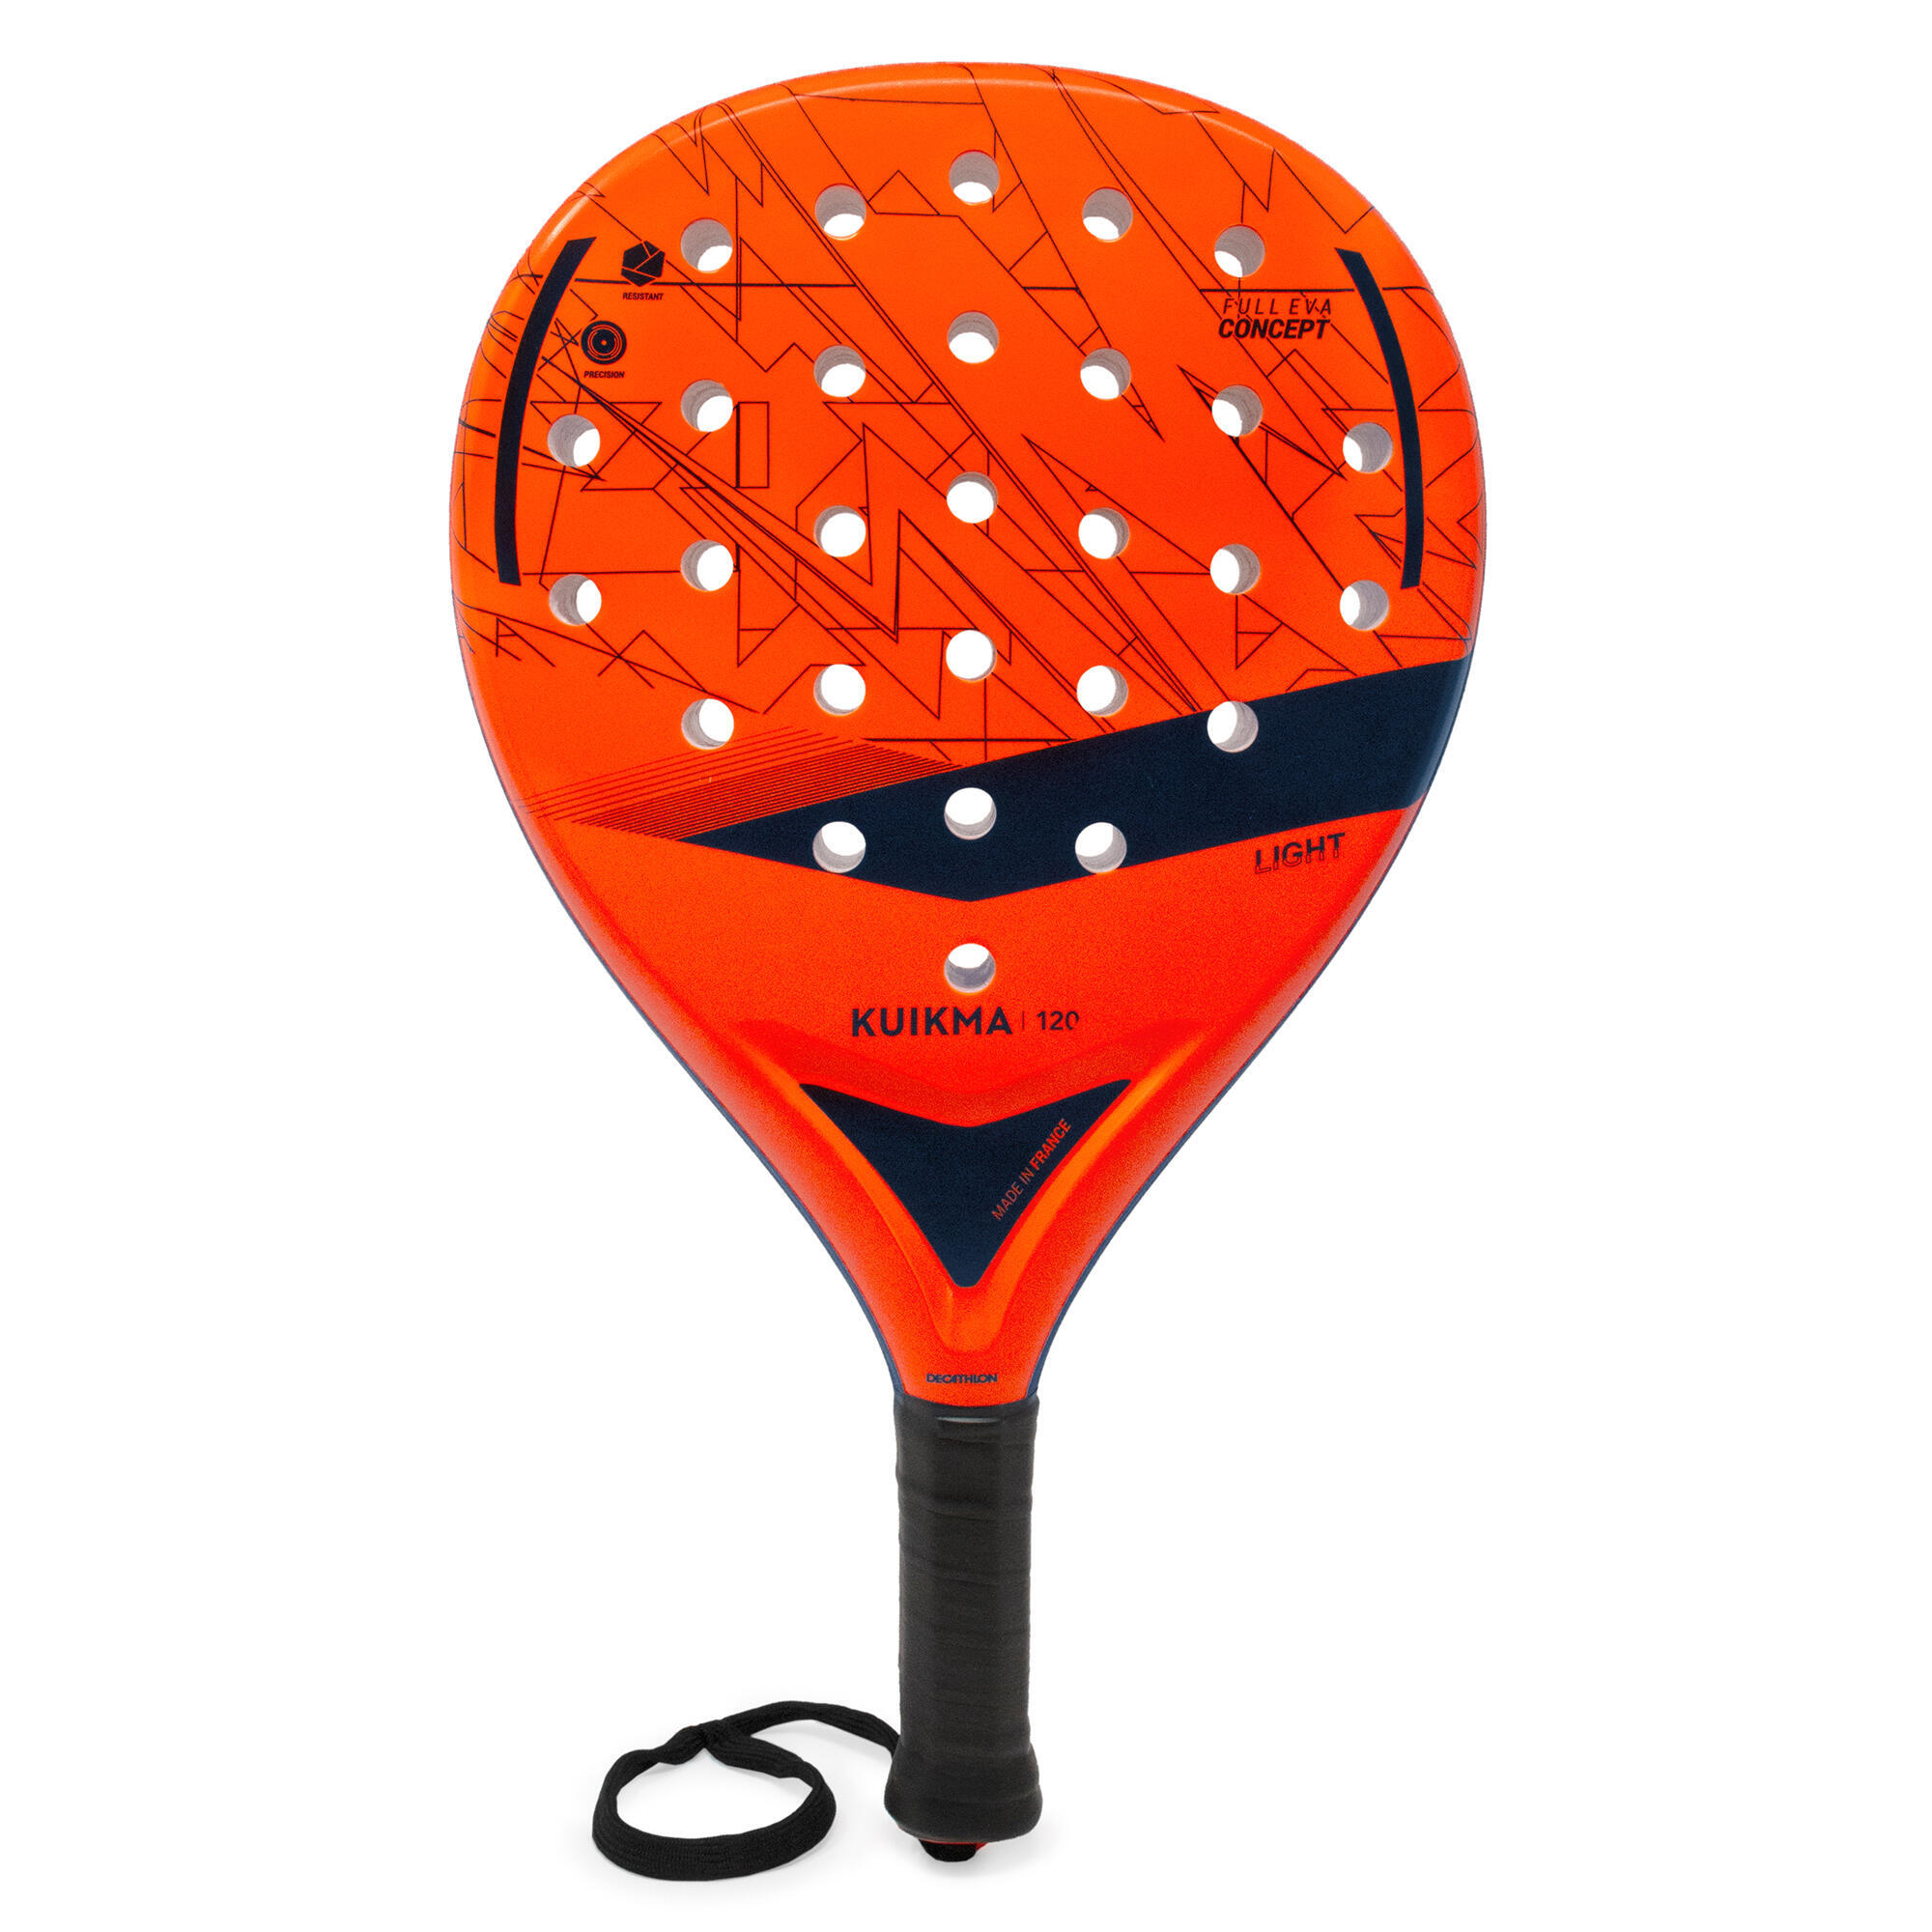 Ракетка для паделя детская - PR120 Light KUIKMA head ракетка для паделя для взрослых delta elite оранжево серая оранжевый серый серебристый